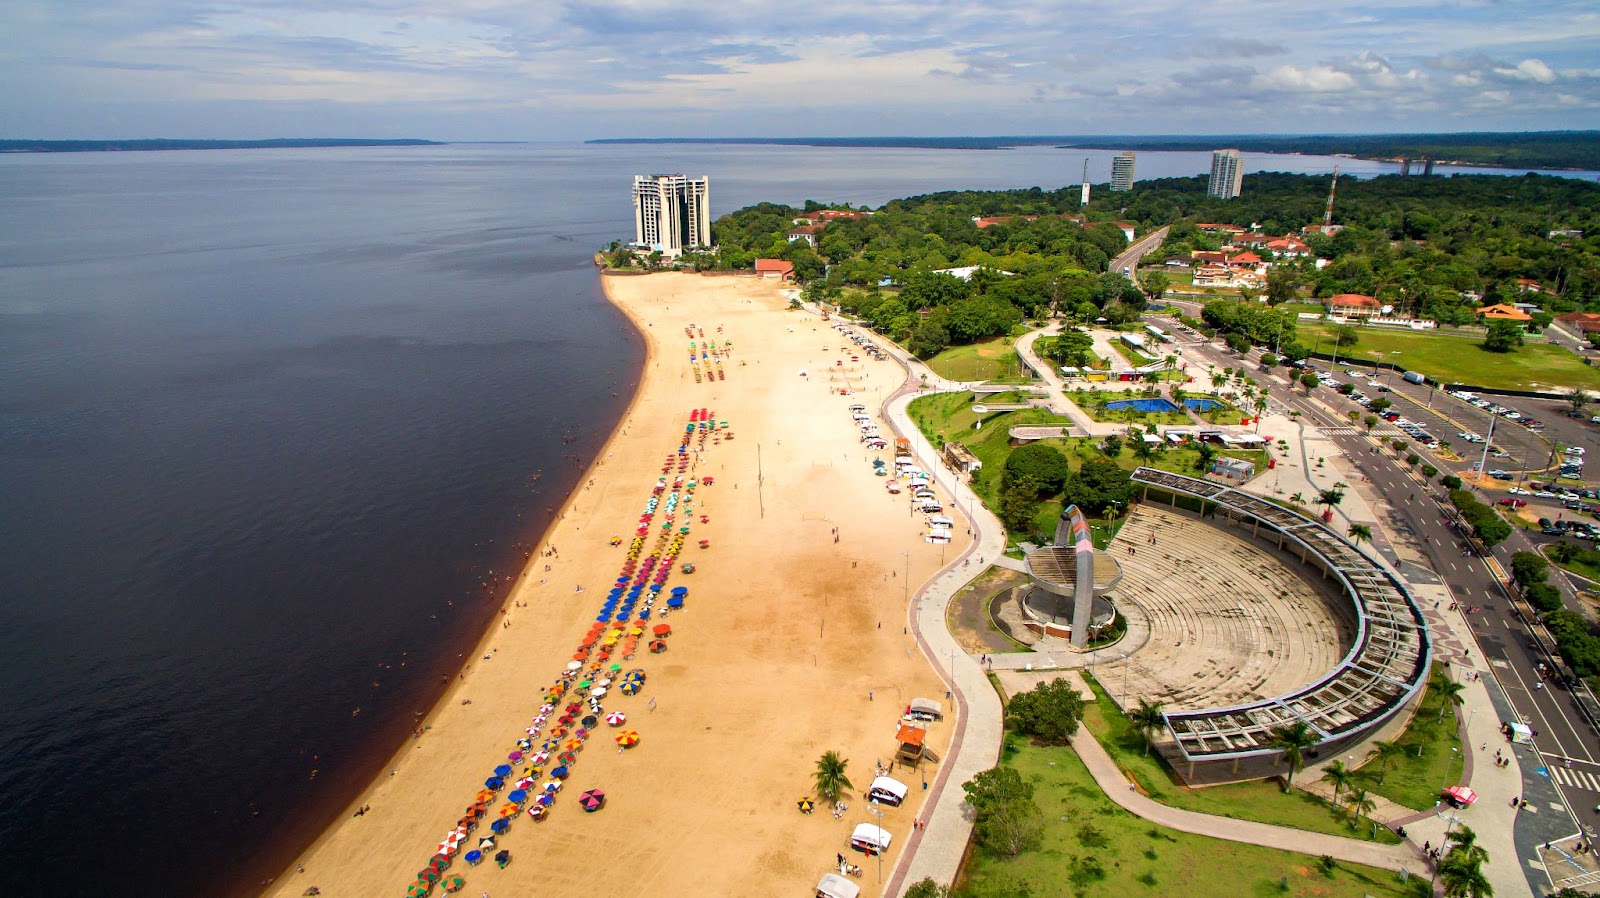 Vista aérea da Praia de Ponta Negra, Manaus. A larga faixa de areia dourada é limitada pelas águas negras do rio e por um longo calçadão onde fica um anfiteatro. Há alguns guarda-sóis e barraquinhas espalhados pela areia